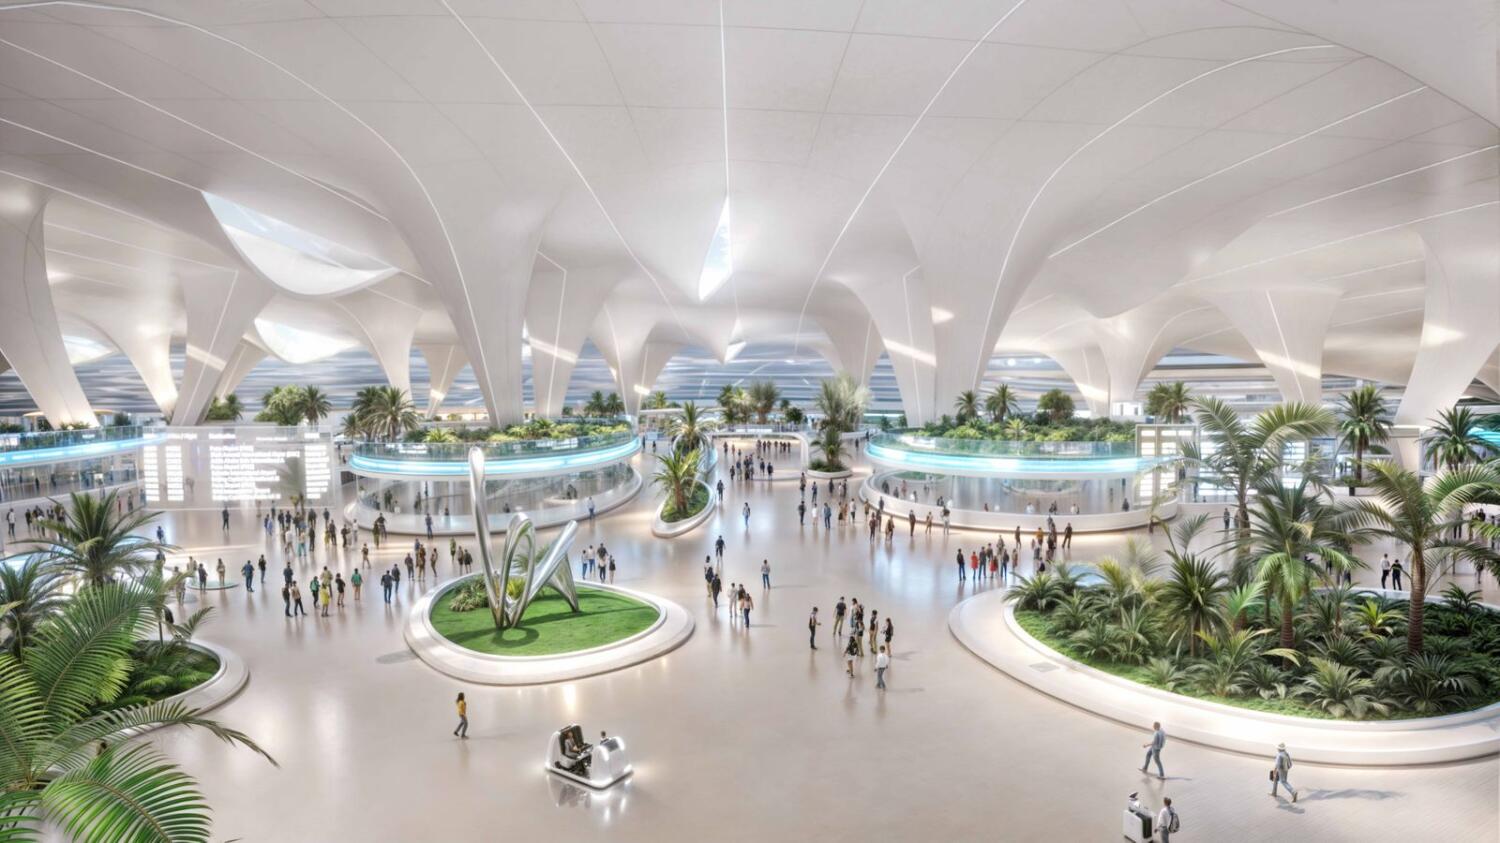 Al Maktoum Airport expansion